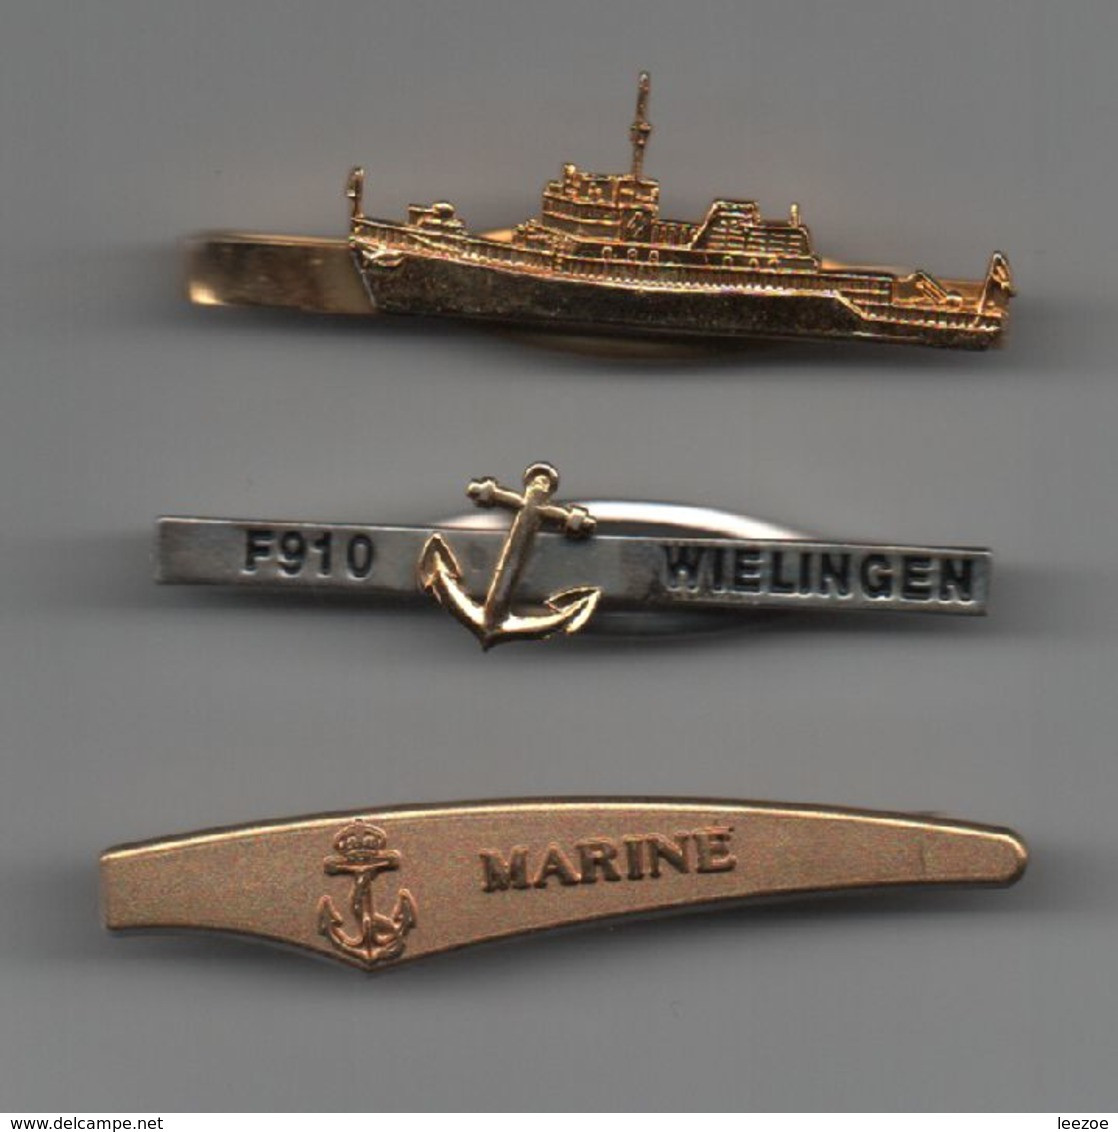 MARINE Pinces à Cravattes Marine F910 WIELINGEN, Bateaux, Navires....BT15 - Décoration Maritime